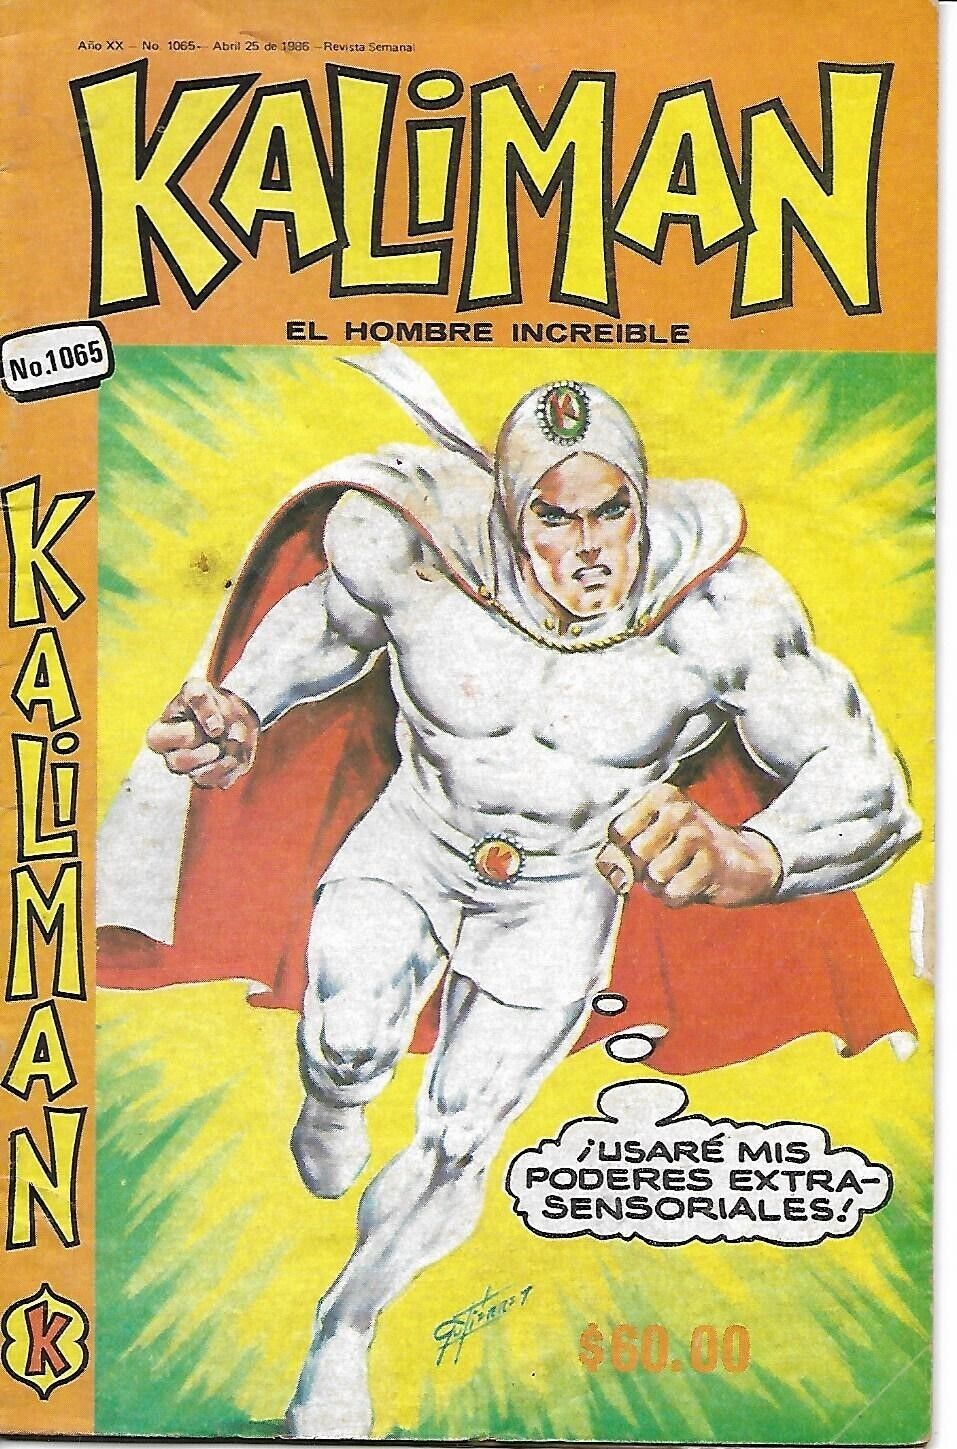 Kaliman El Hombre Increible #1065 - Abril 25, 1986